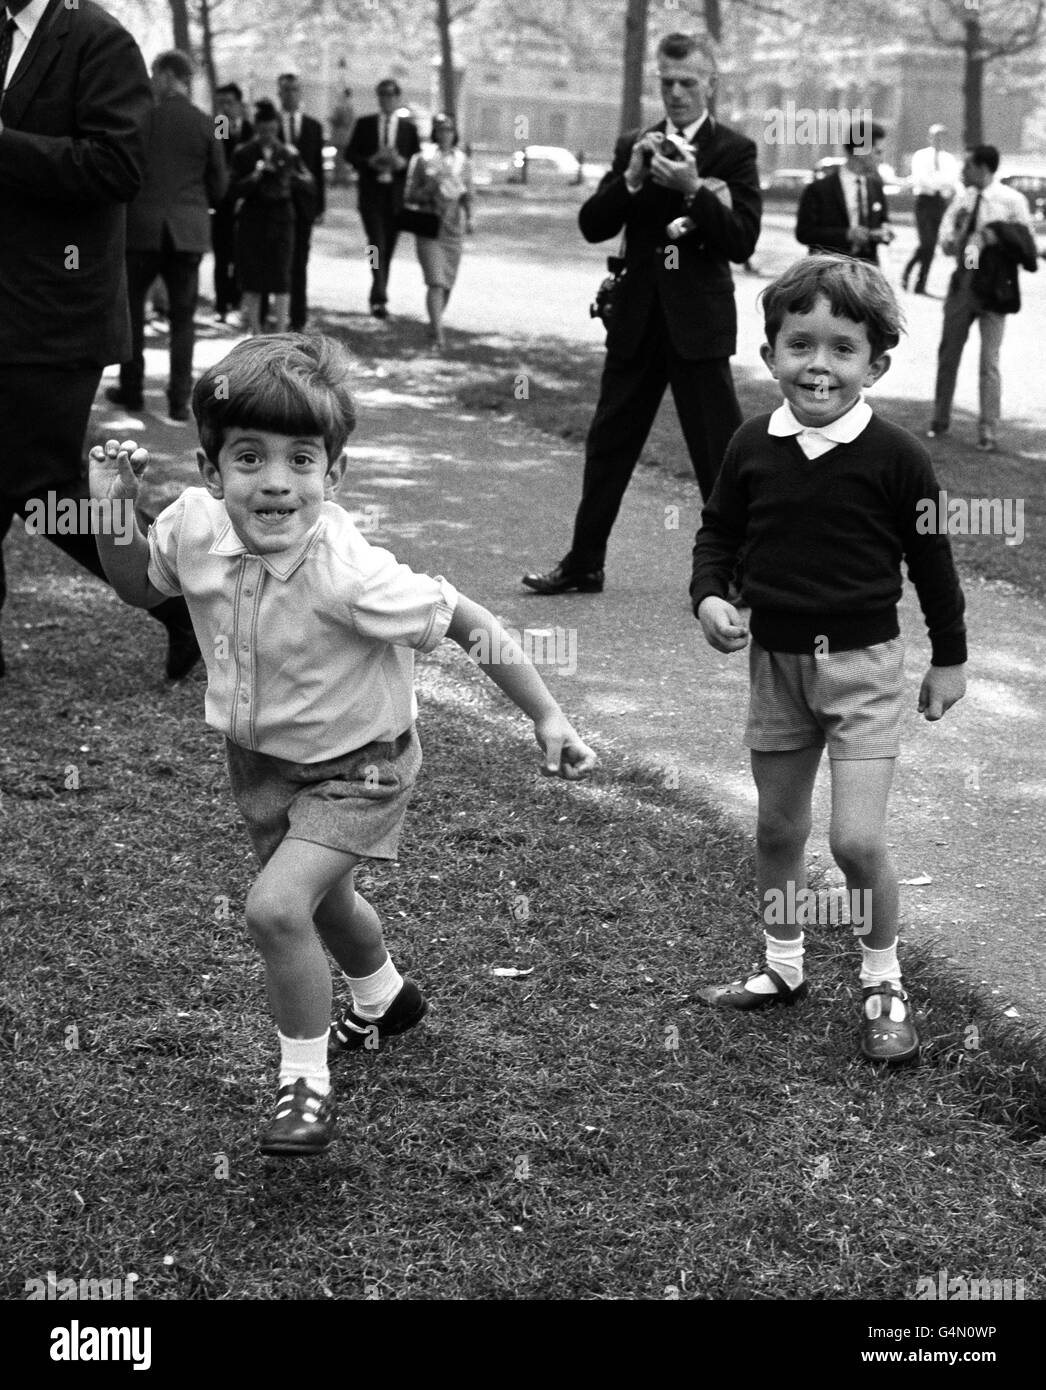 Figlio del defunto presidente americano John F Kennedy, John Jr (L) con suo cugino Anthony (R) a Londra per l'inaugurazione del memoriale al defunto John Kennedy a Runnymede, vicino a windsor. Foto Stock